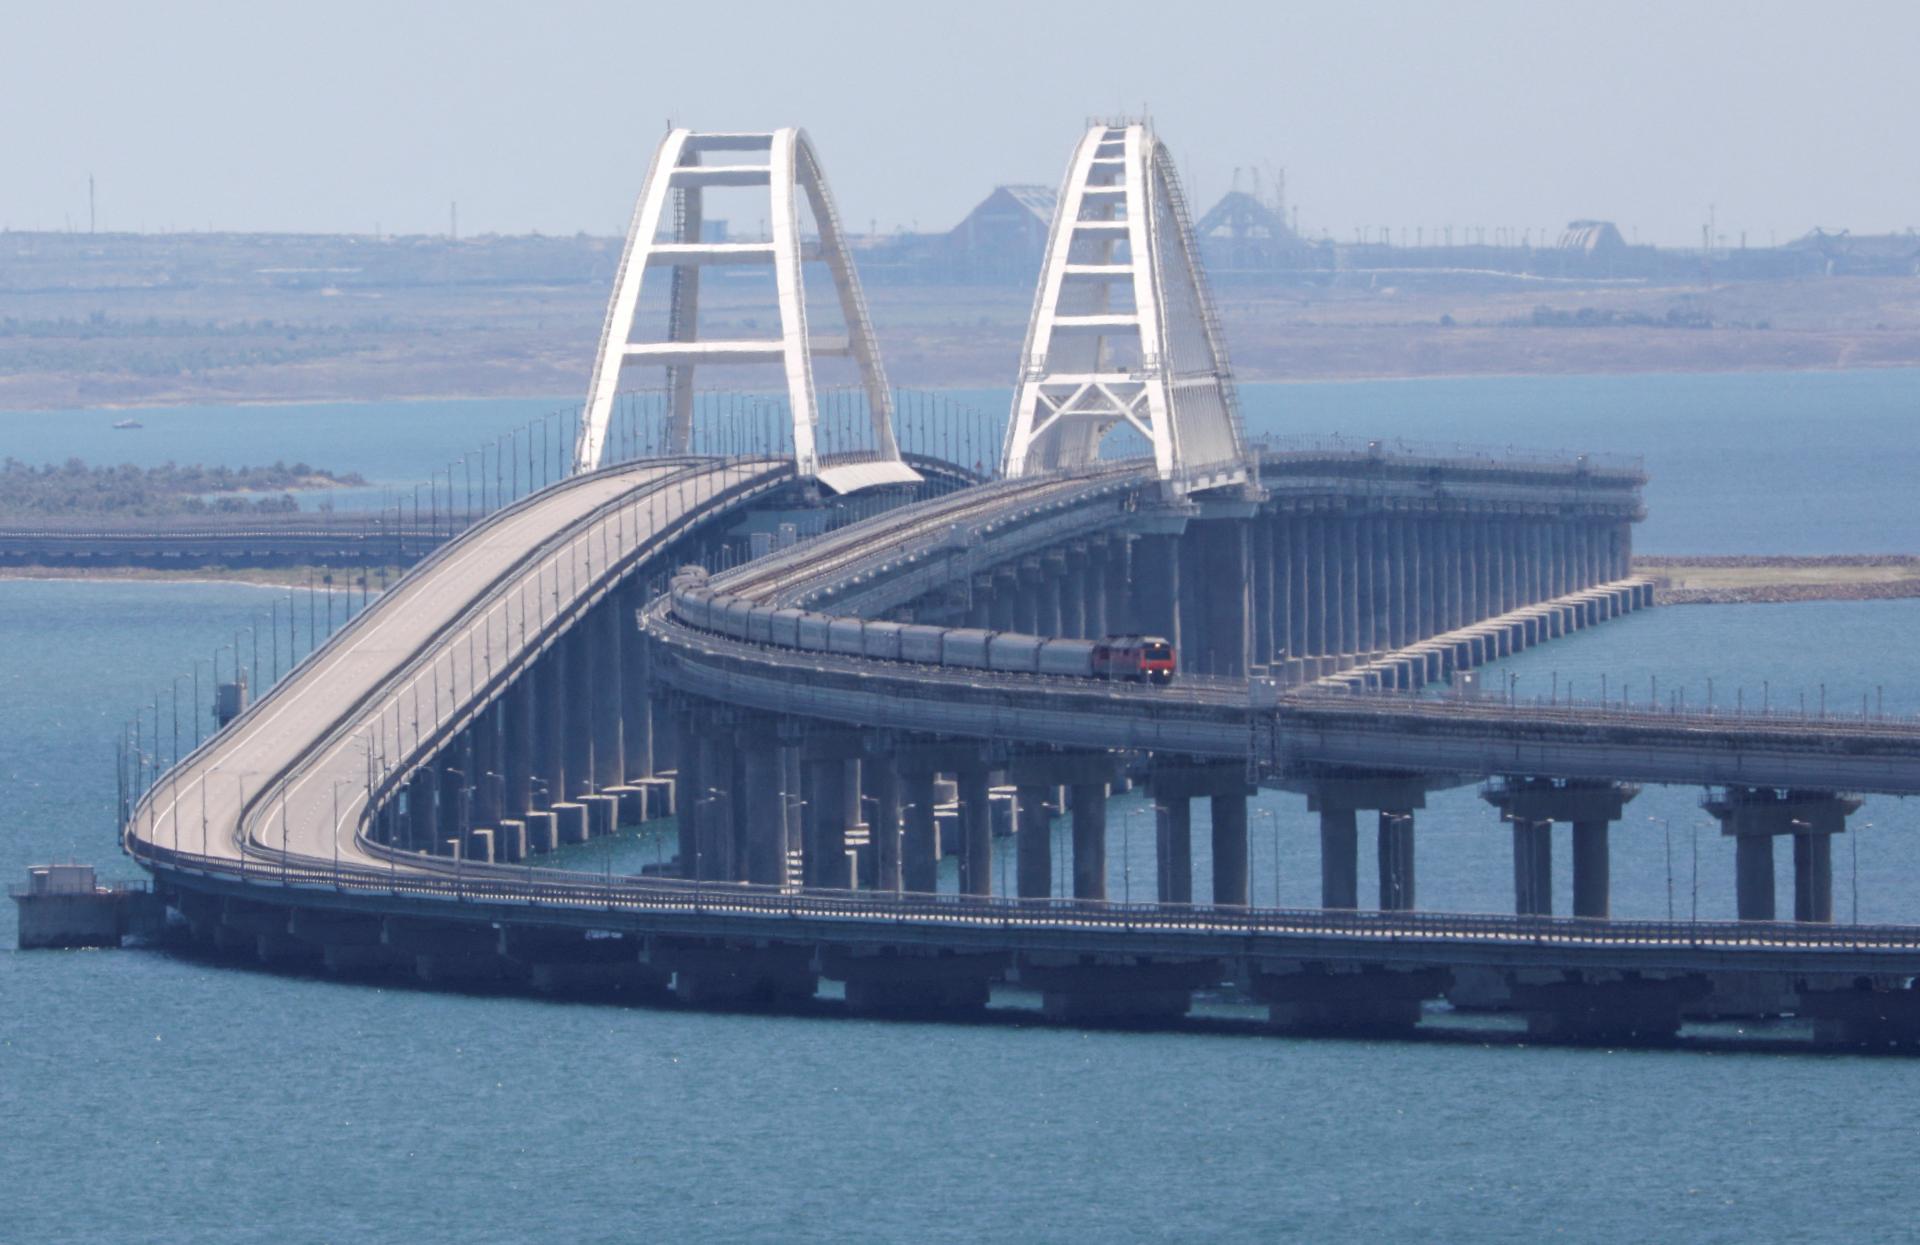 Rusi usilovne budujú novú železnicu na Krym. Obíde zraniteľný most